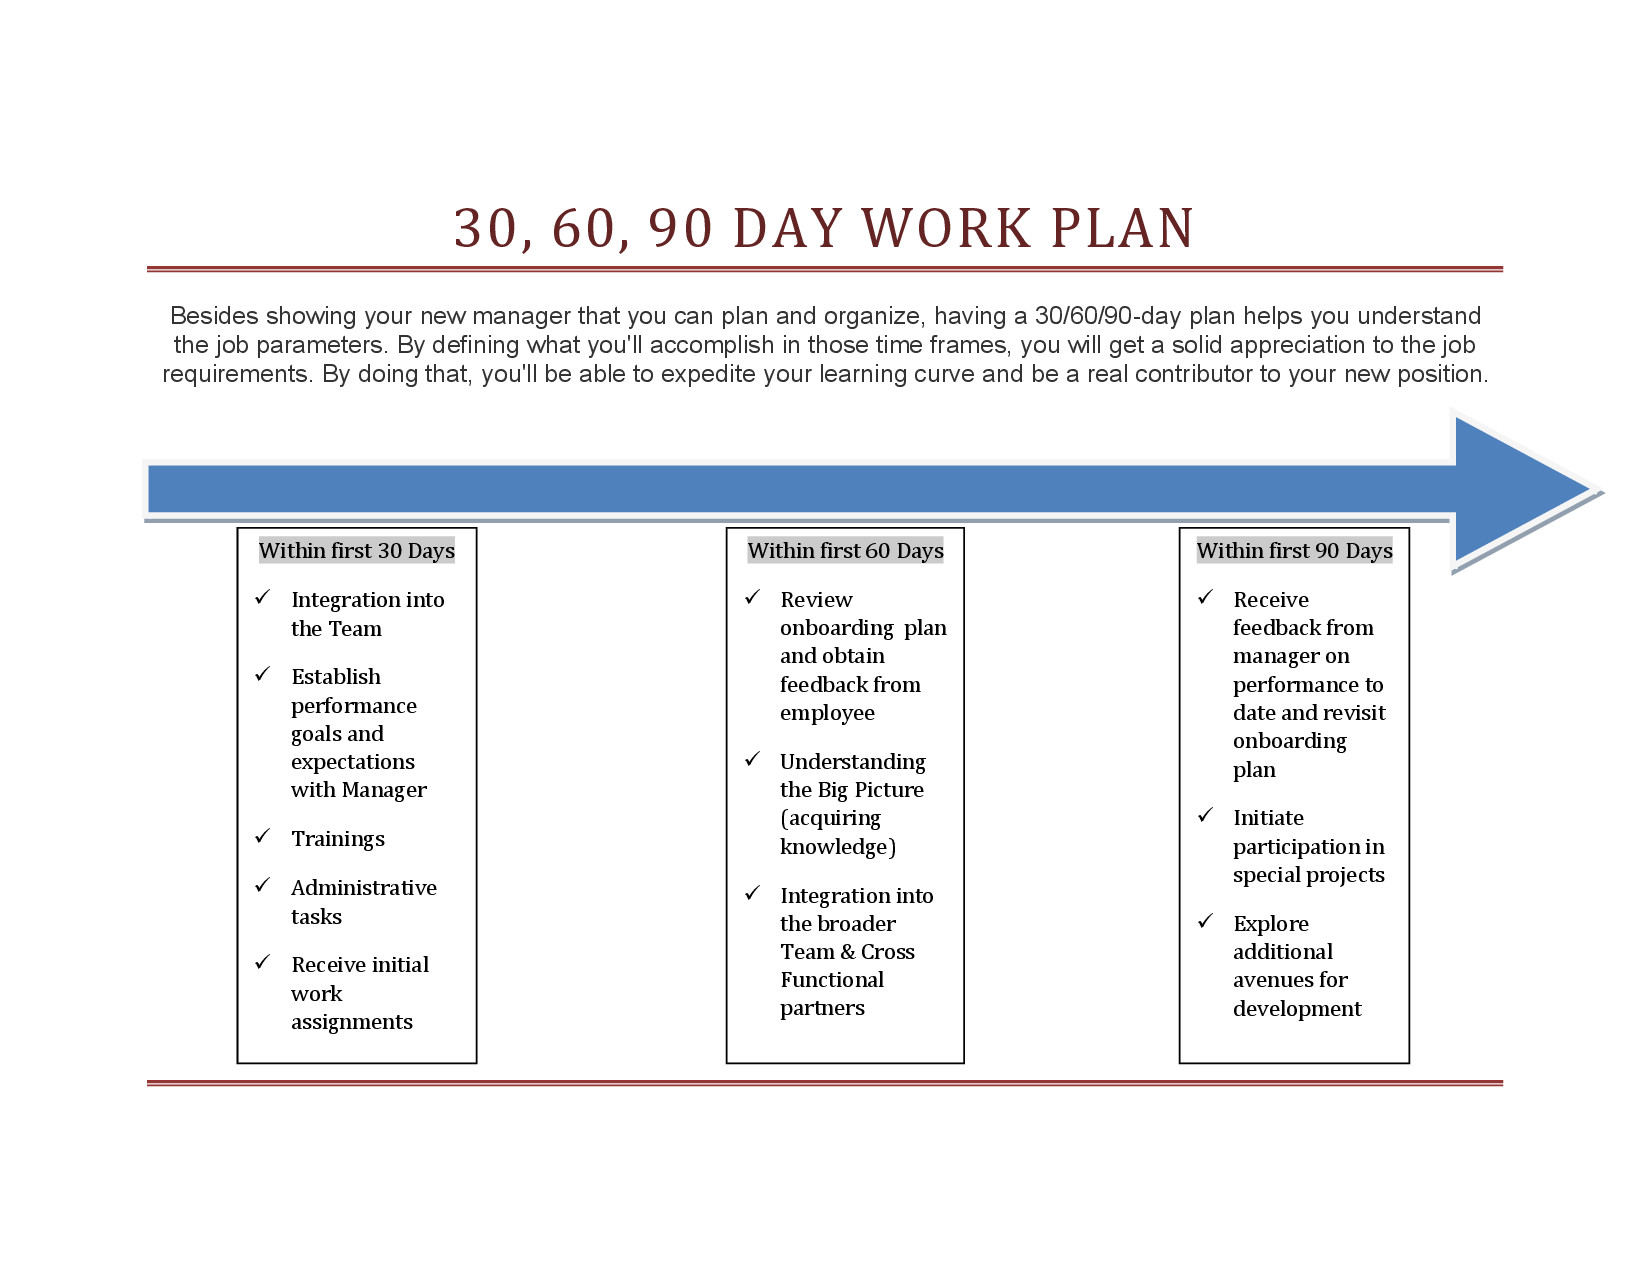 30 60 90 day work plan templatepdf by Tinammckenna